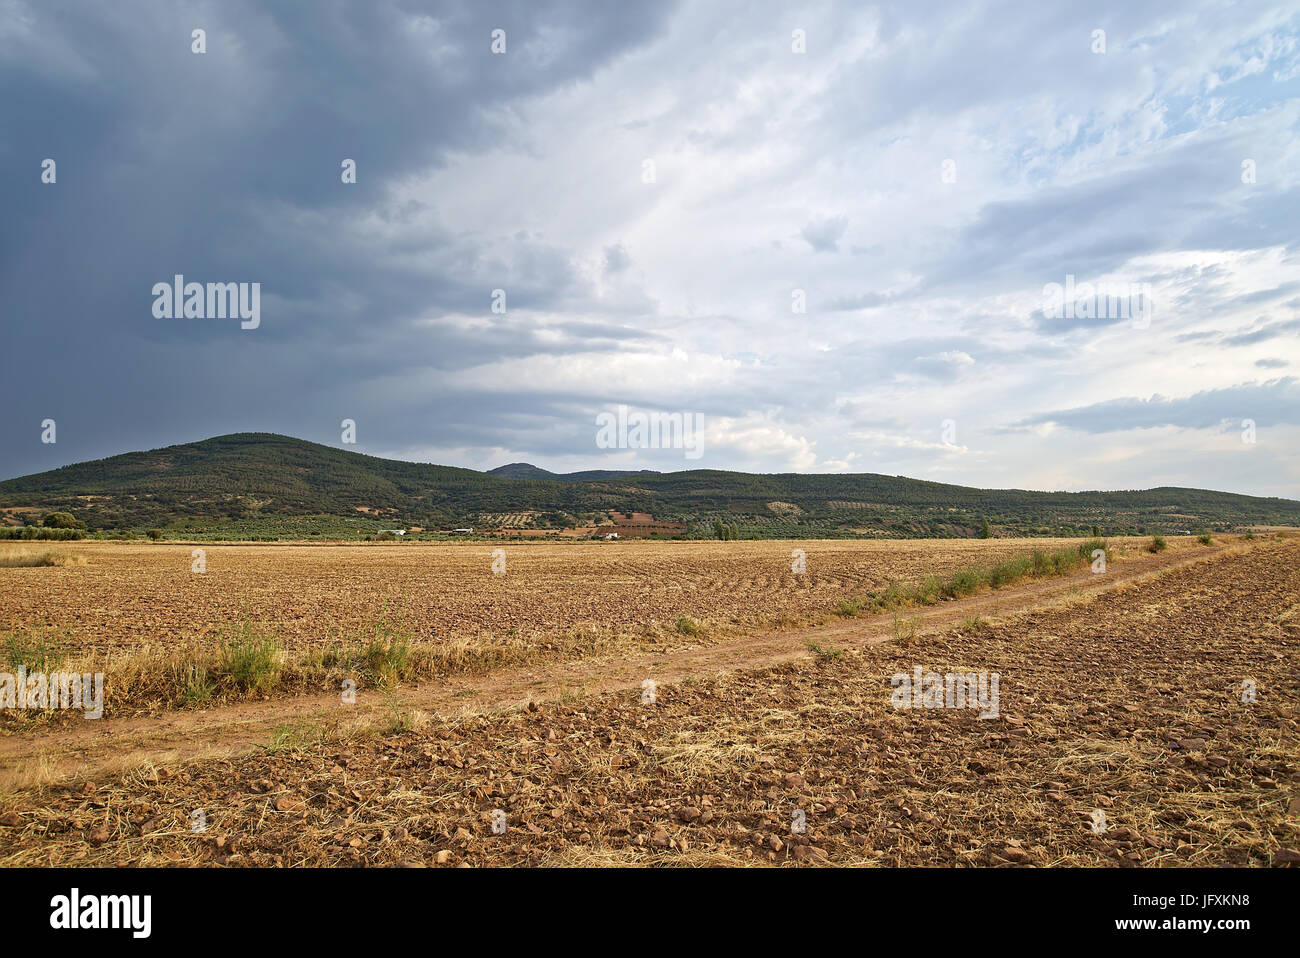 Image de départ dans la tempête les montagnes de Galinda à Tolède, en Espagne. Vue prise en été, montrant l'aridité du terrain. Banque D'Images